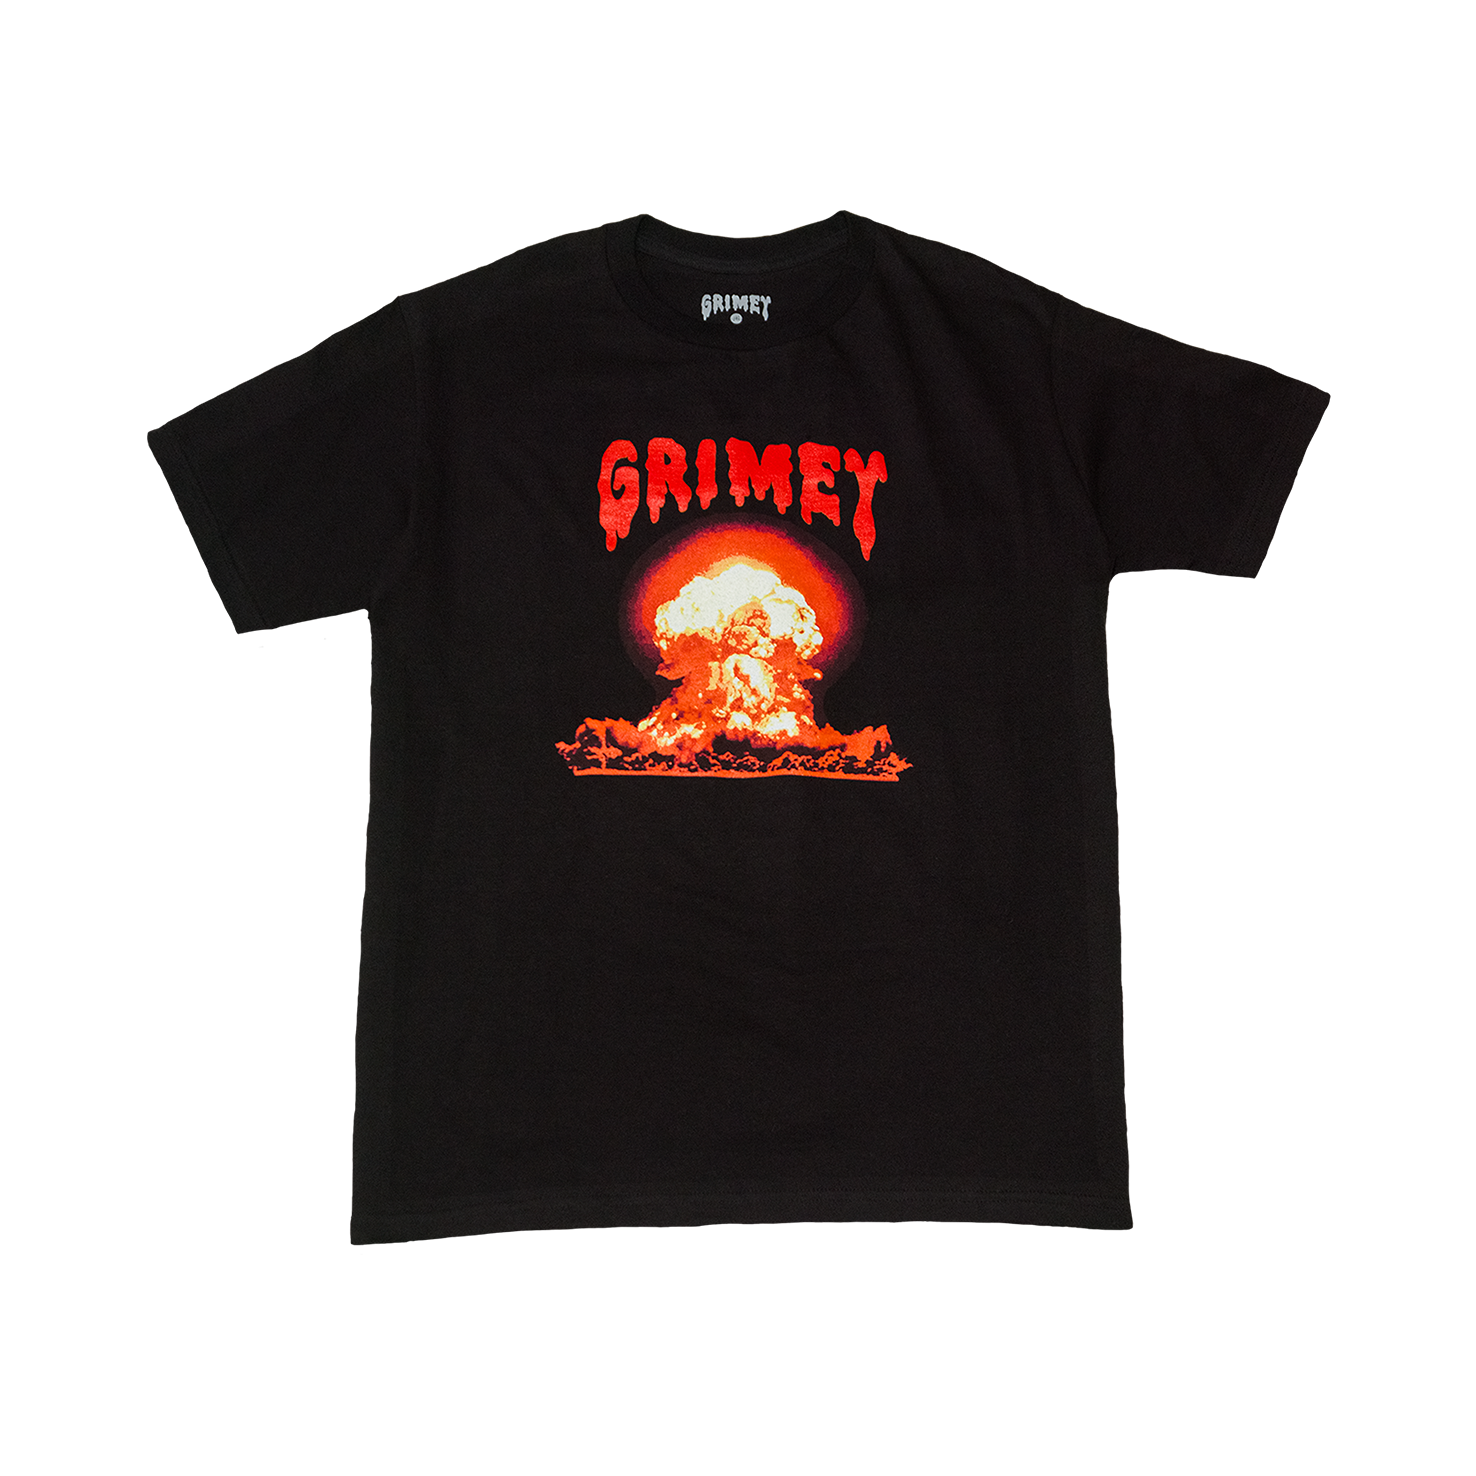 Grimey 'QUARREL' T-Shirt